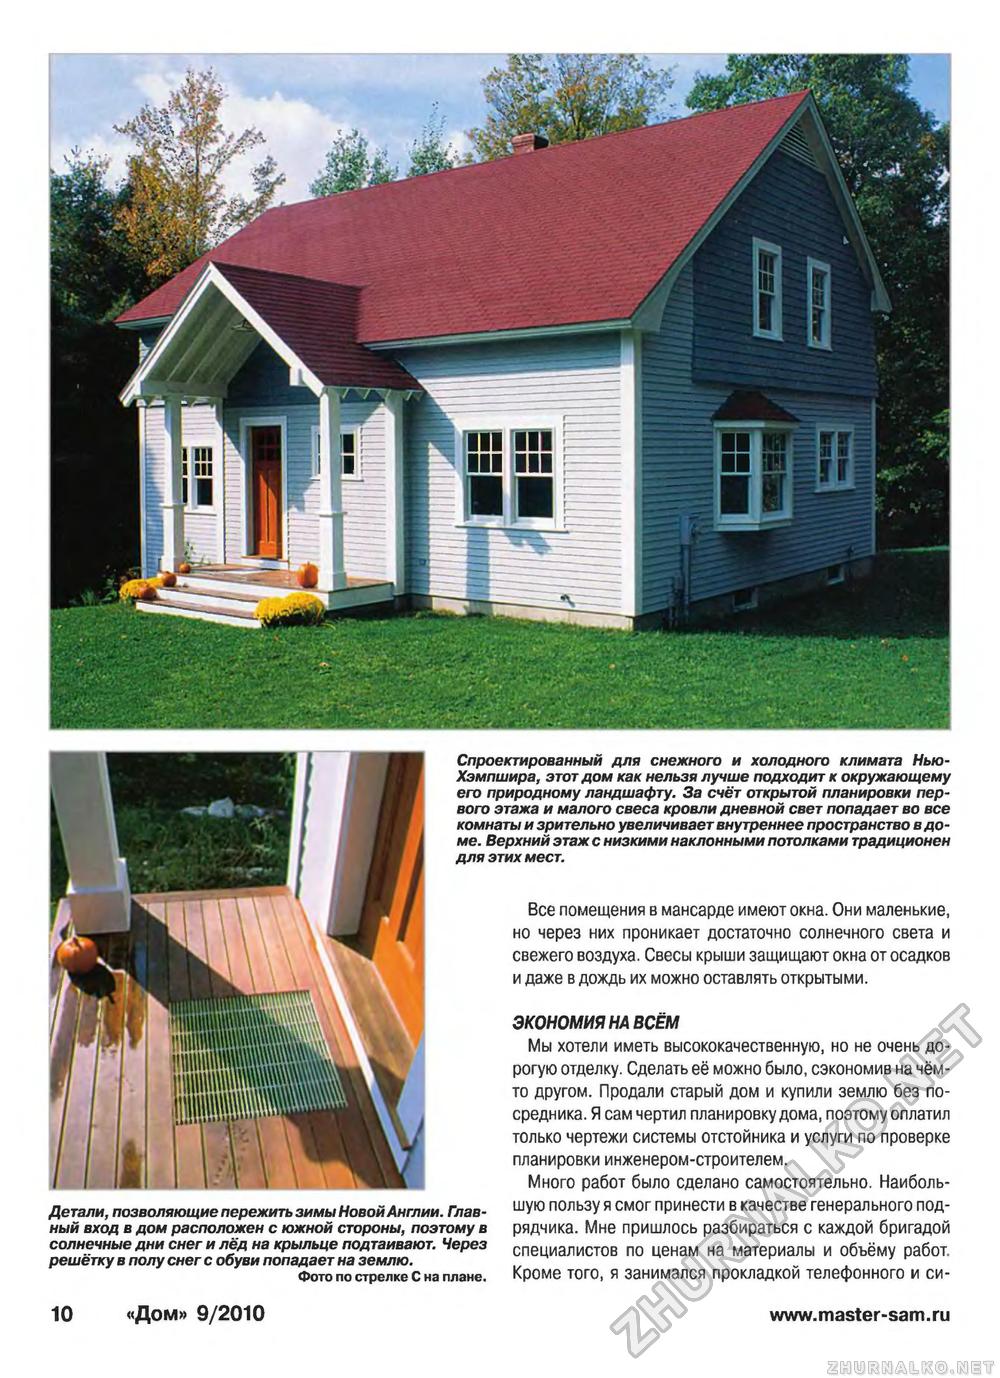 Дом 2010-09, страница 10